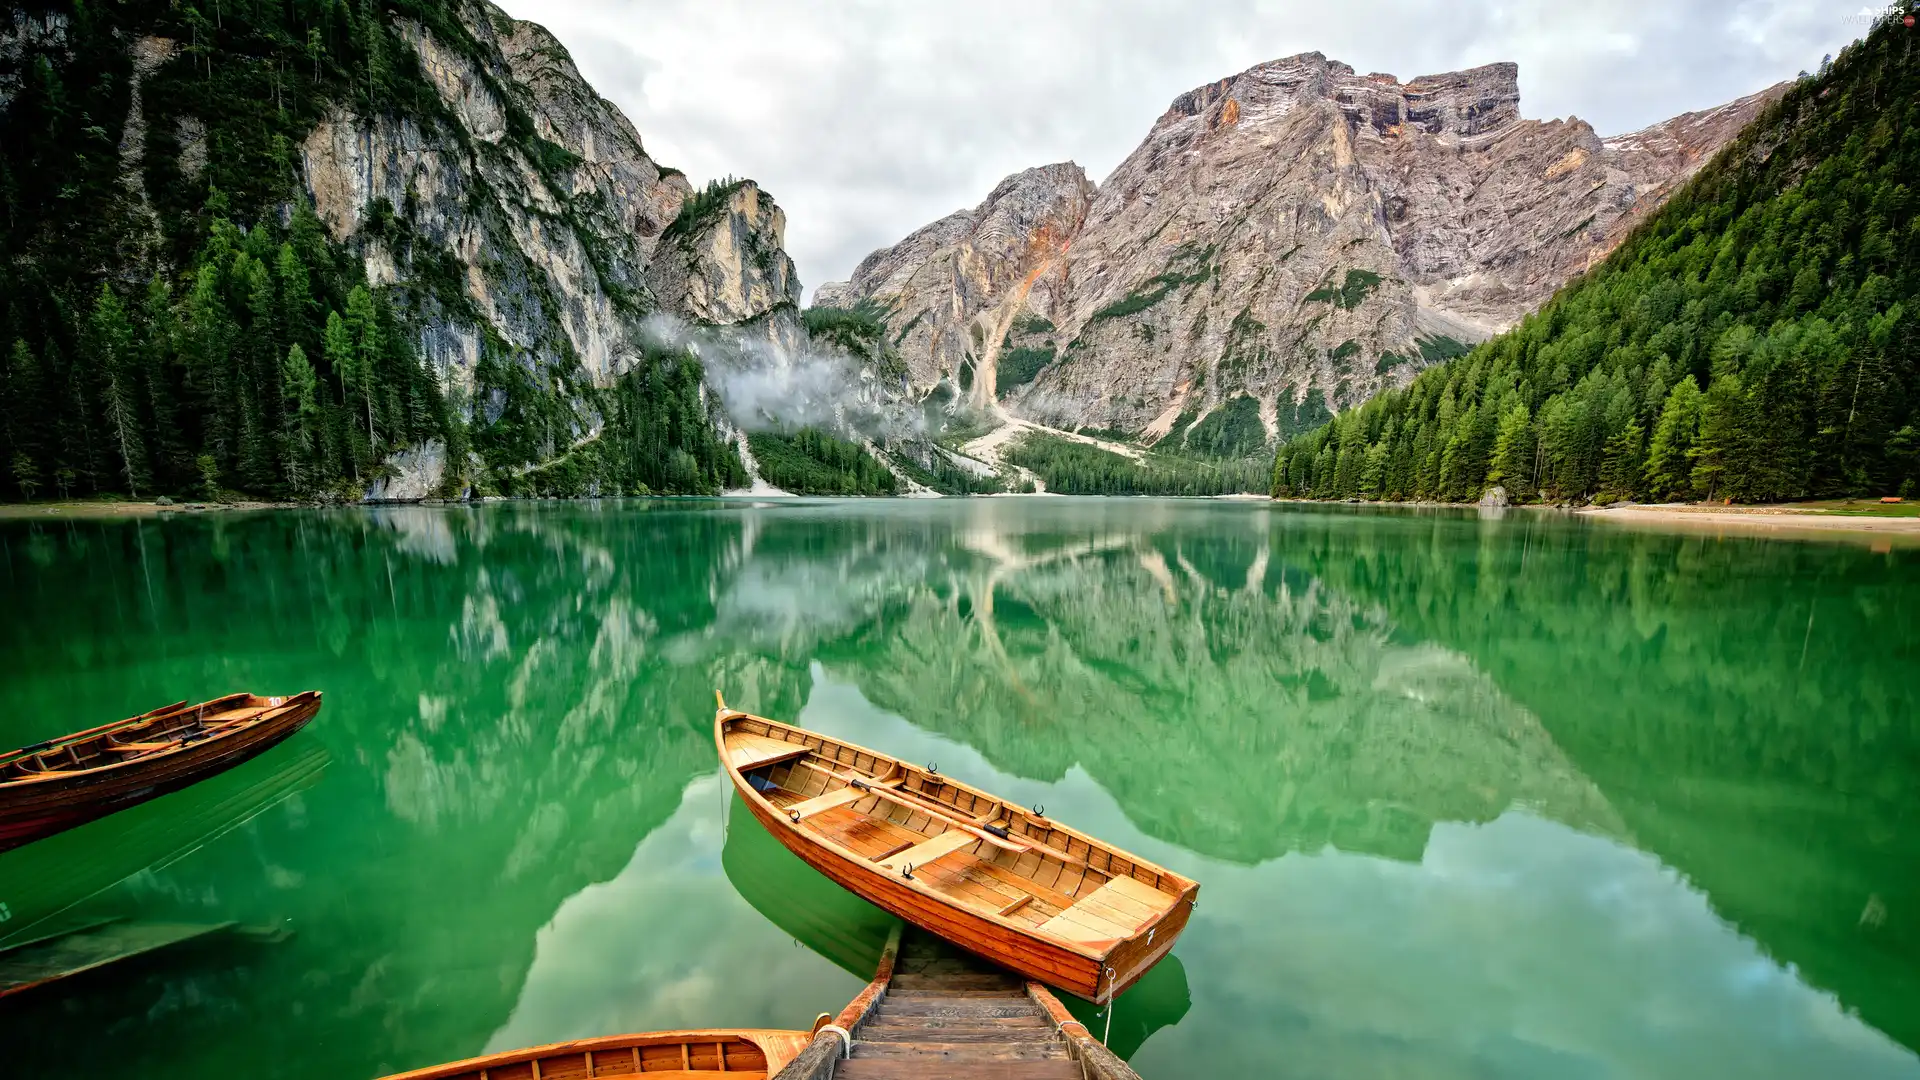 Mountains, Pragser Wildsee Lake, Platform, Tirol, Italy, Dolomites, boats